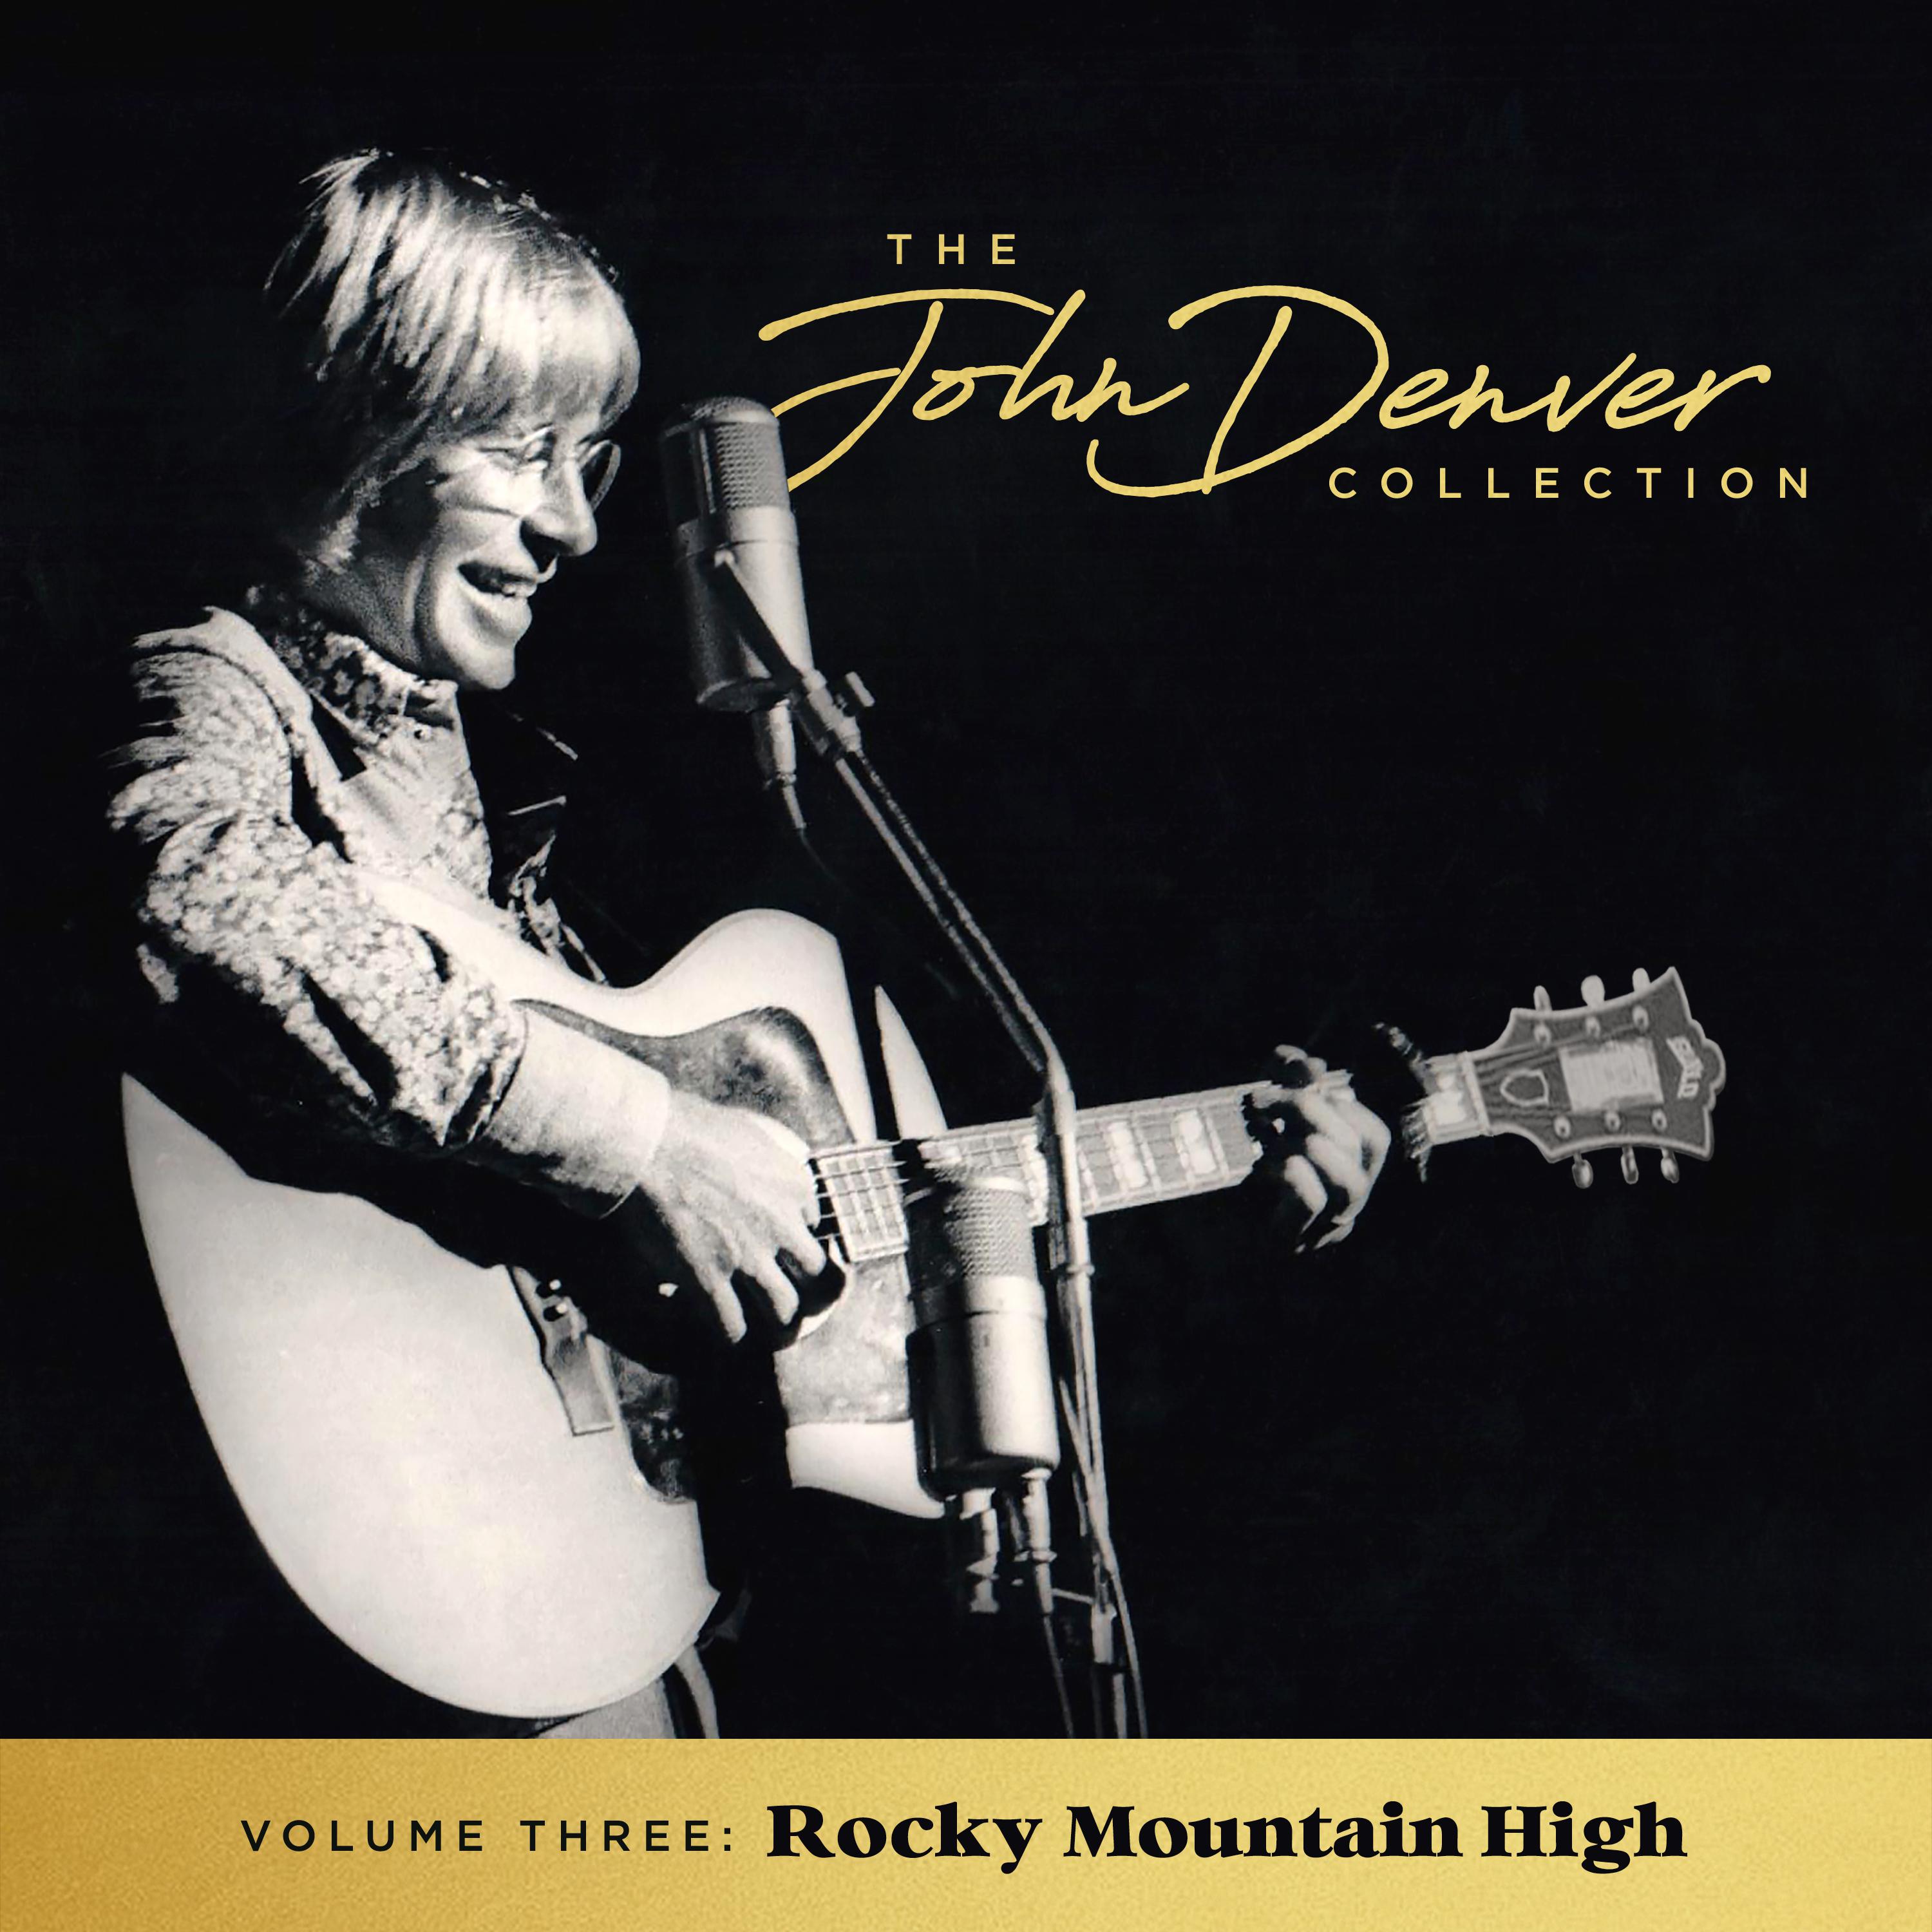 The John Denver Collection, Vol 3: Rocky Mountain High